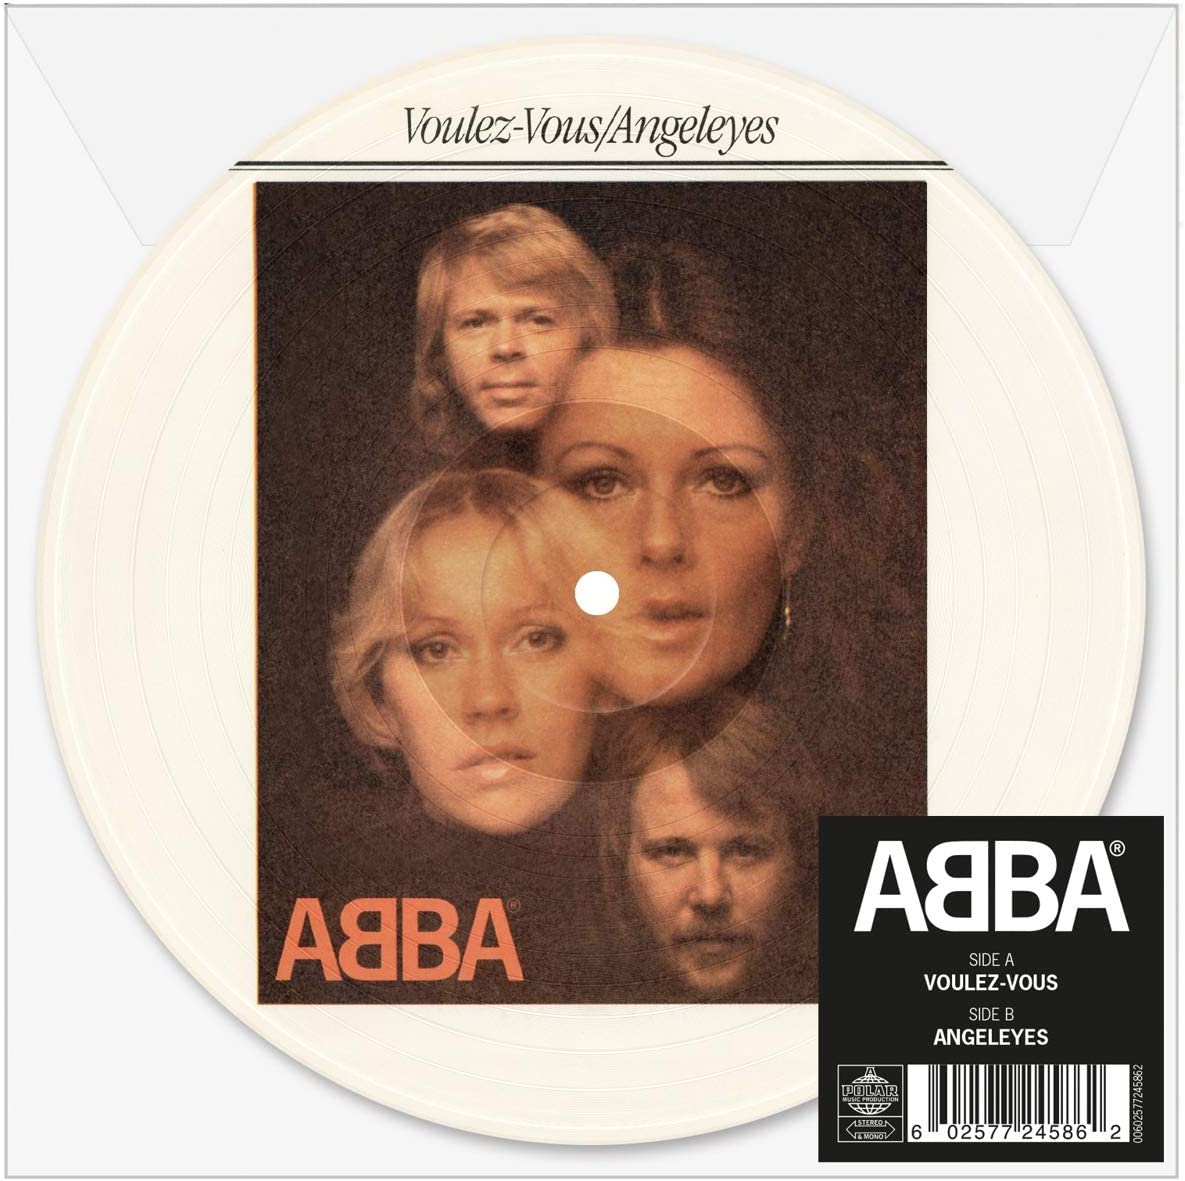 ABBA - Voulez-Vous / Angeleyes (7'' Picture Single)(45 RPM)